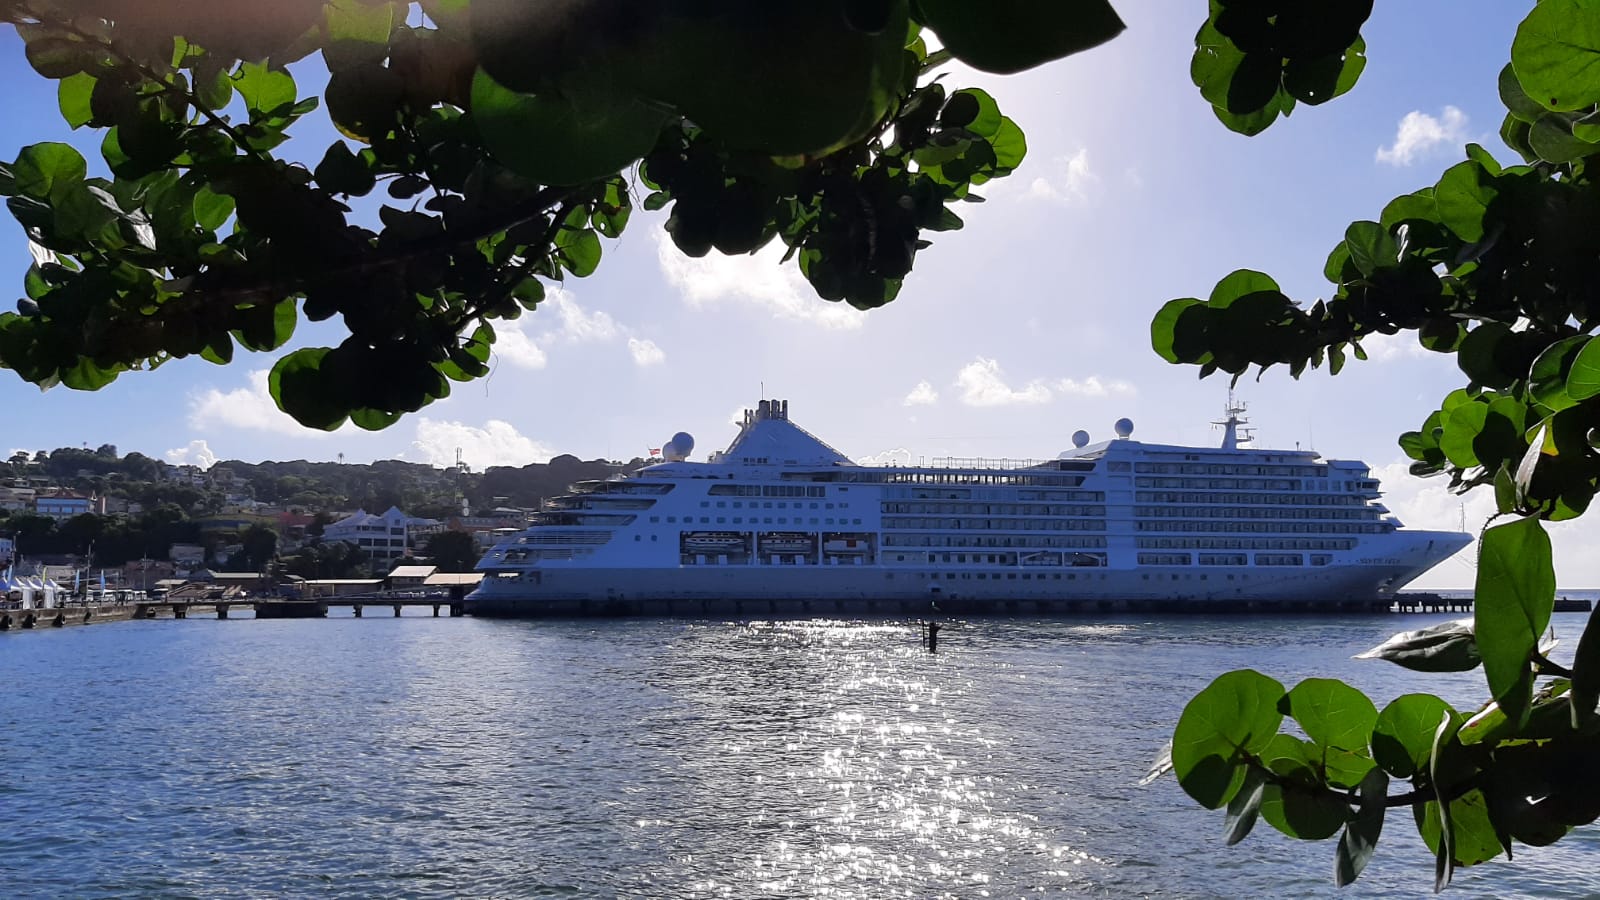 Cruise Ship season kicks off in Tobago